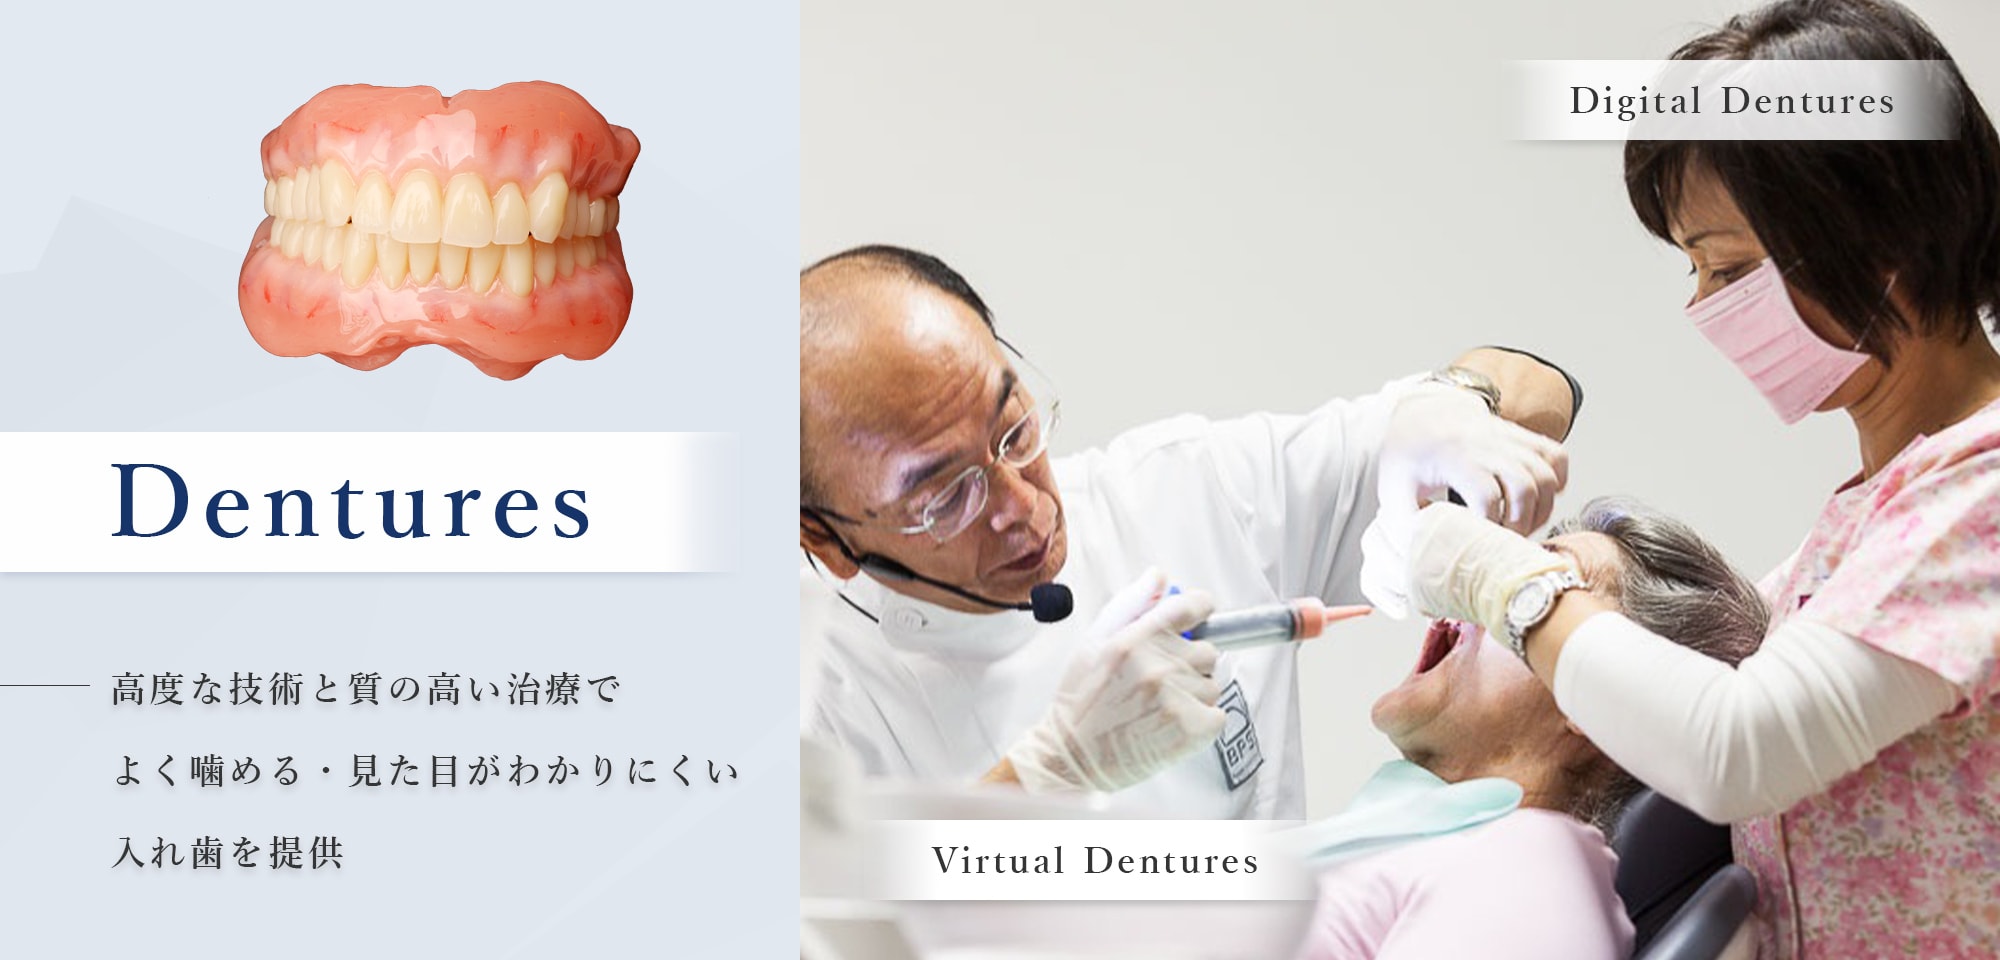 高度な技術と質の高い治療で よく噛める・見た目がわかりにくい 入れ歯を提供